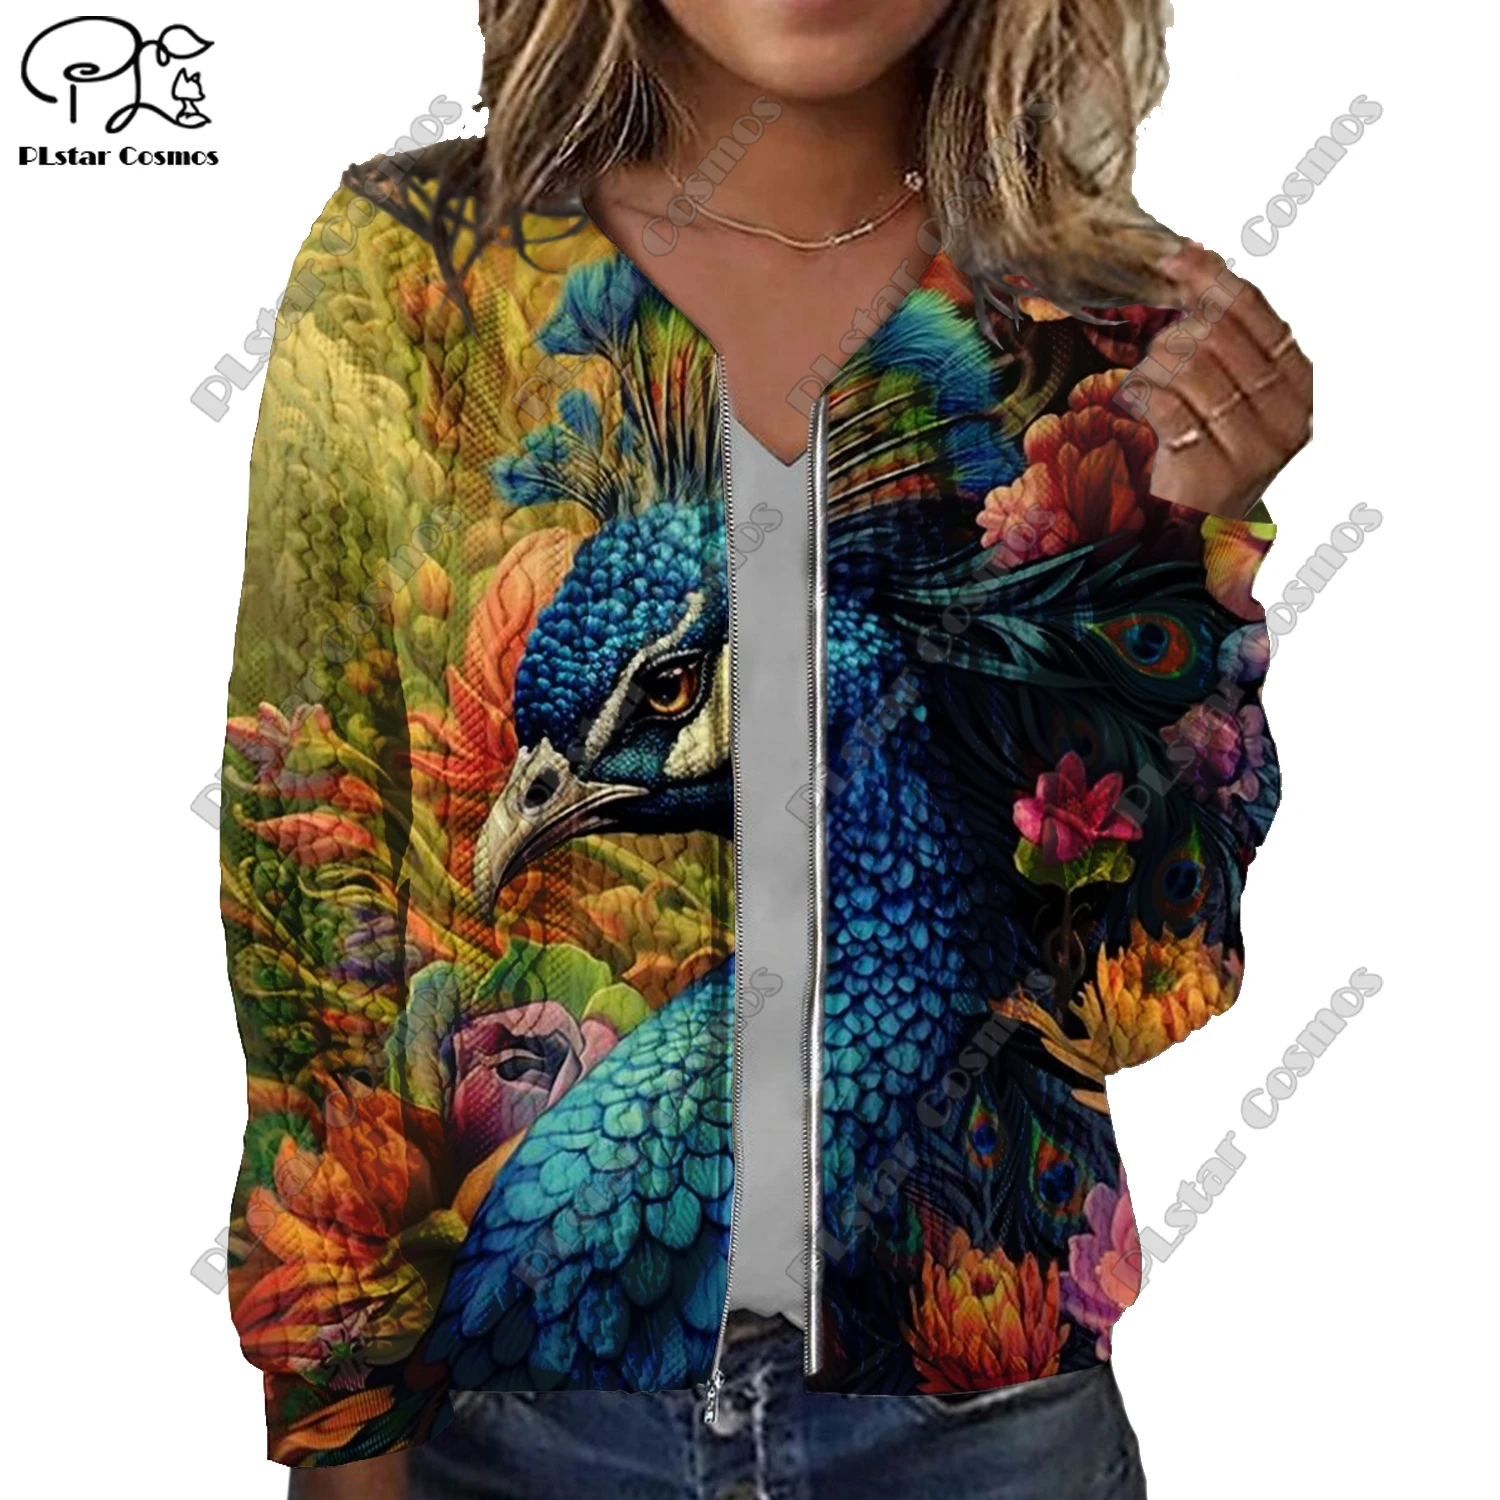 

Женская короткая куртка с резьбовой текстурой, Повседневная оригинальная куртка с 3D-принтом животных, павлинов, попугаев